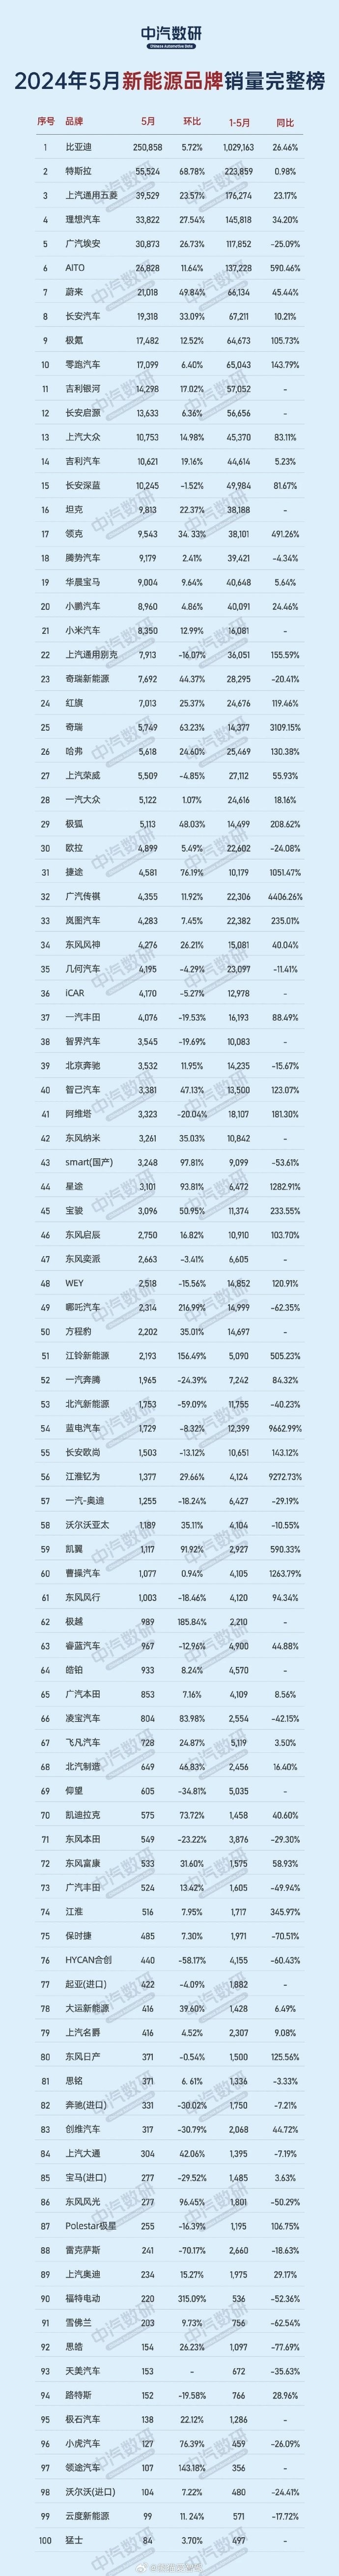 5月新能源品牌销量完整榜单公布:小米崭露头角 位列21